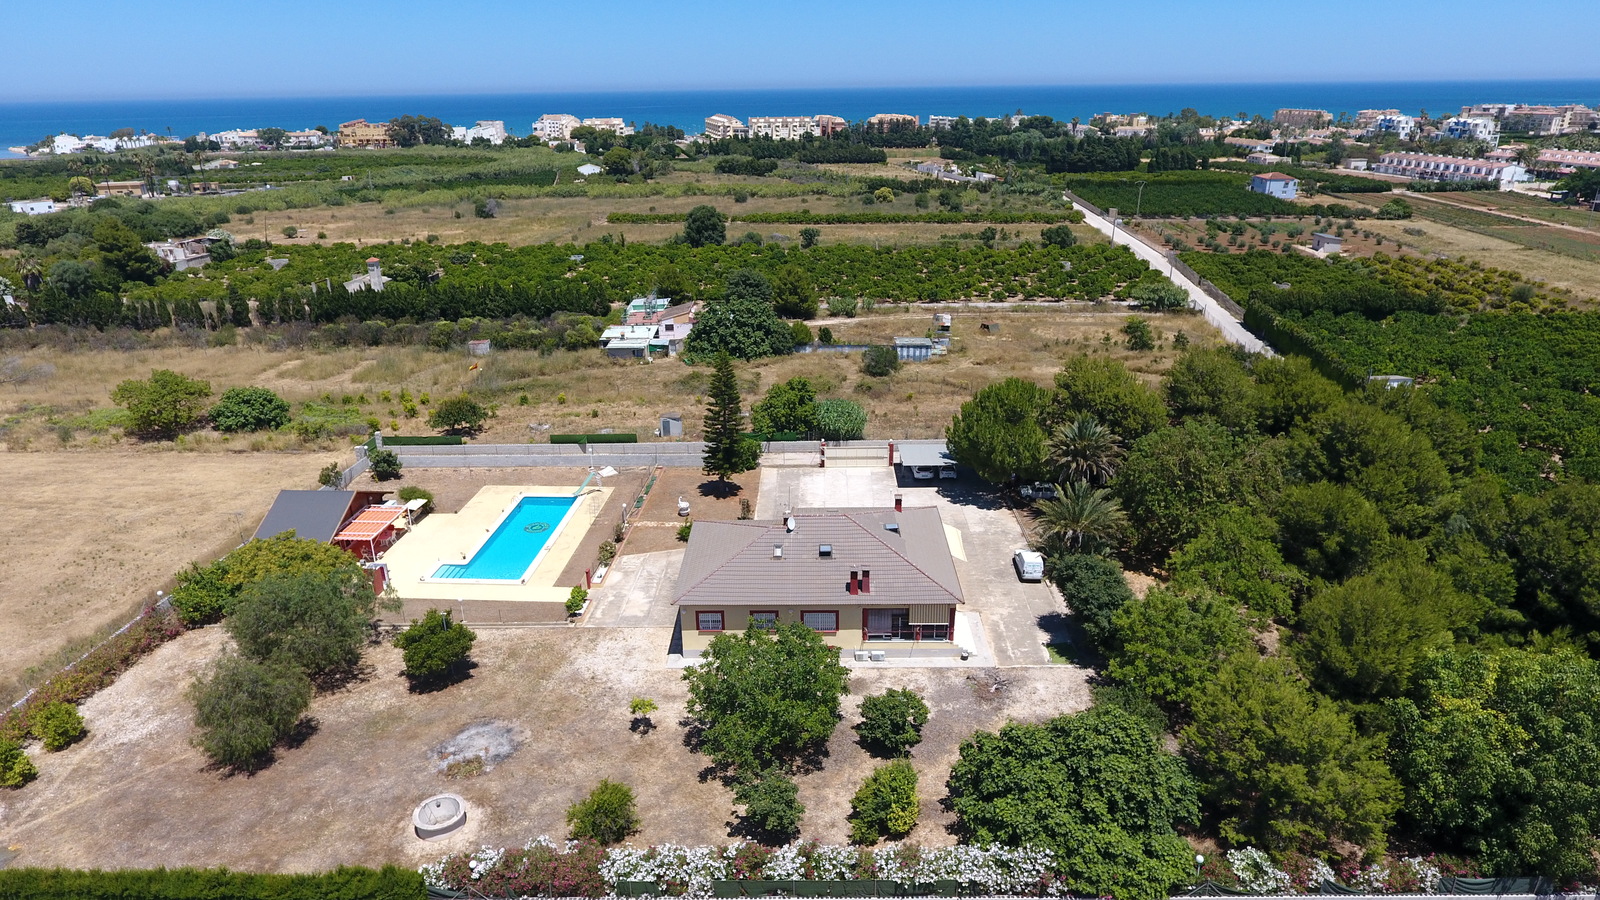 Espectacular Villa de 4 dormitorios con piscina de grandes dimensiones en una parcela muy privada y cerca de la playa